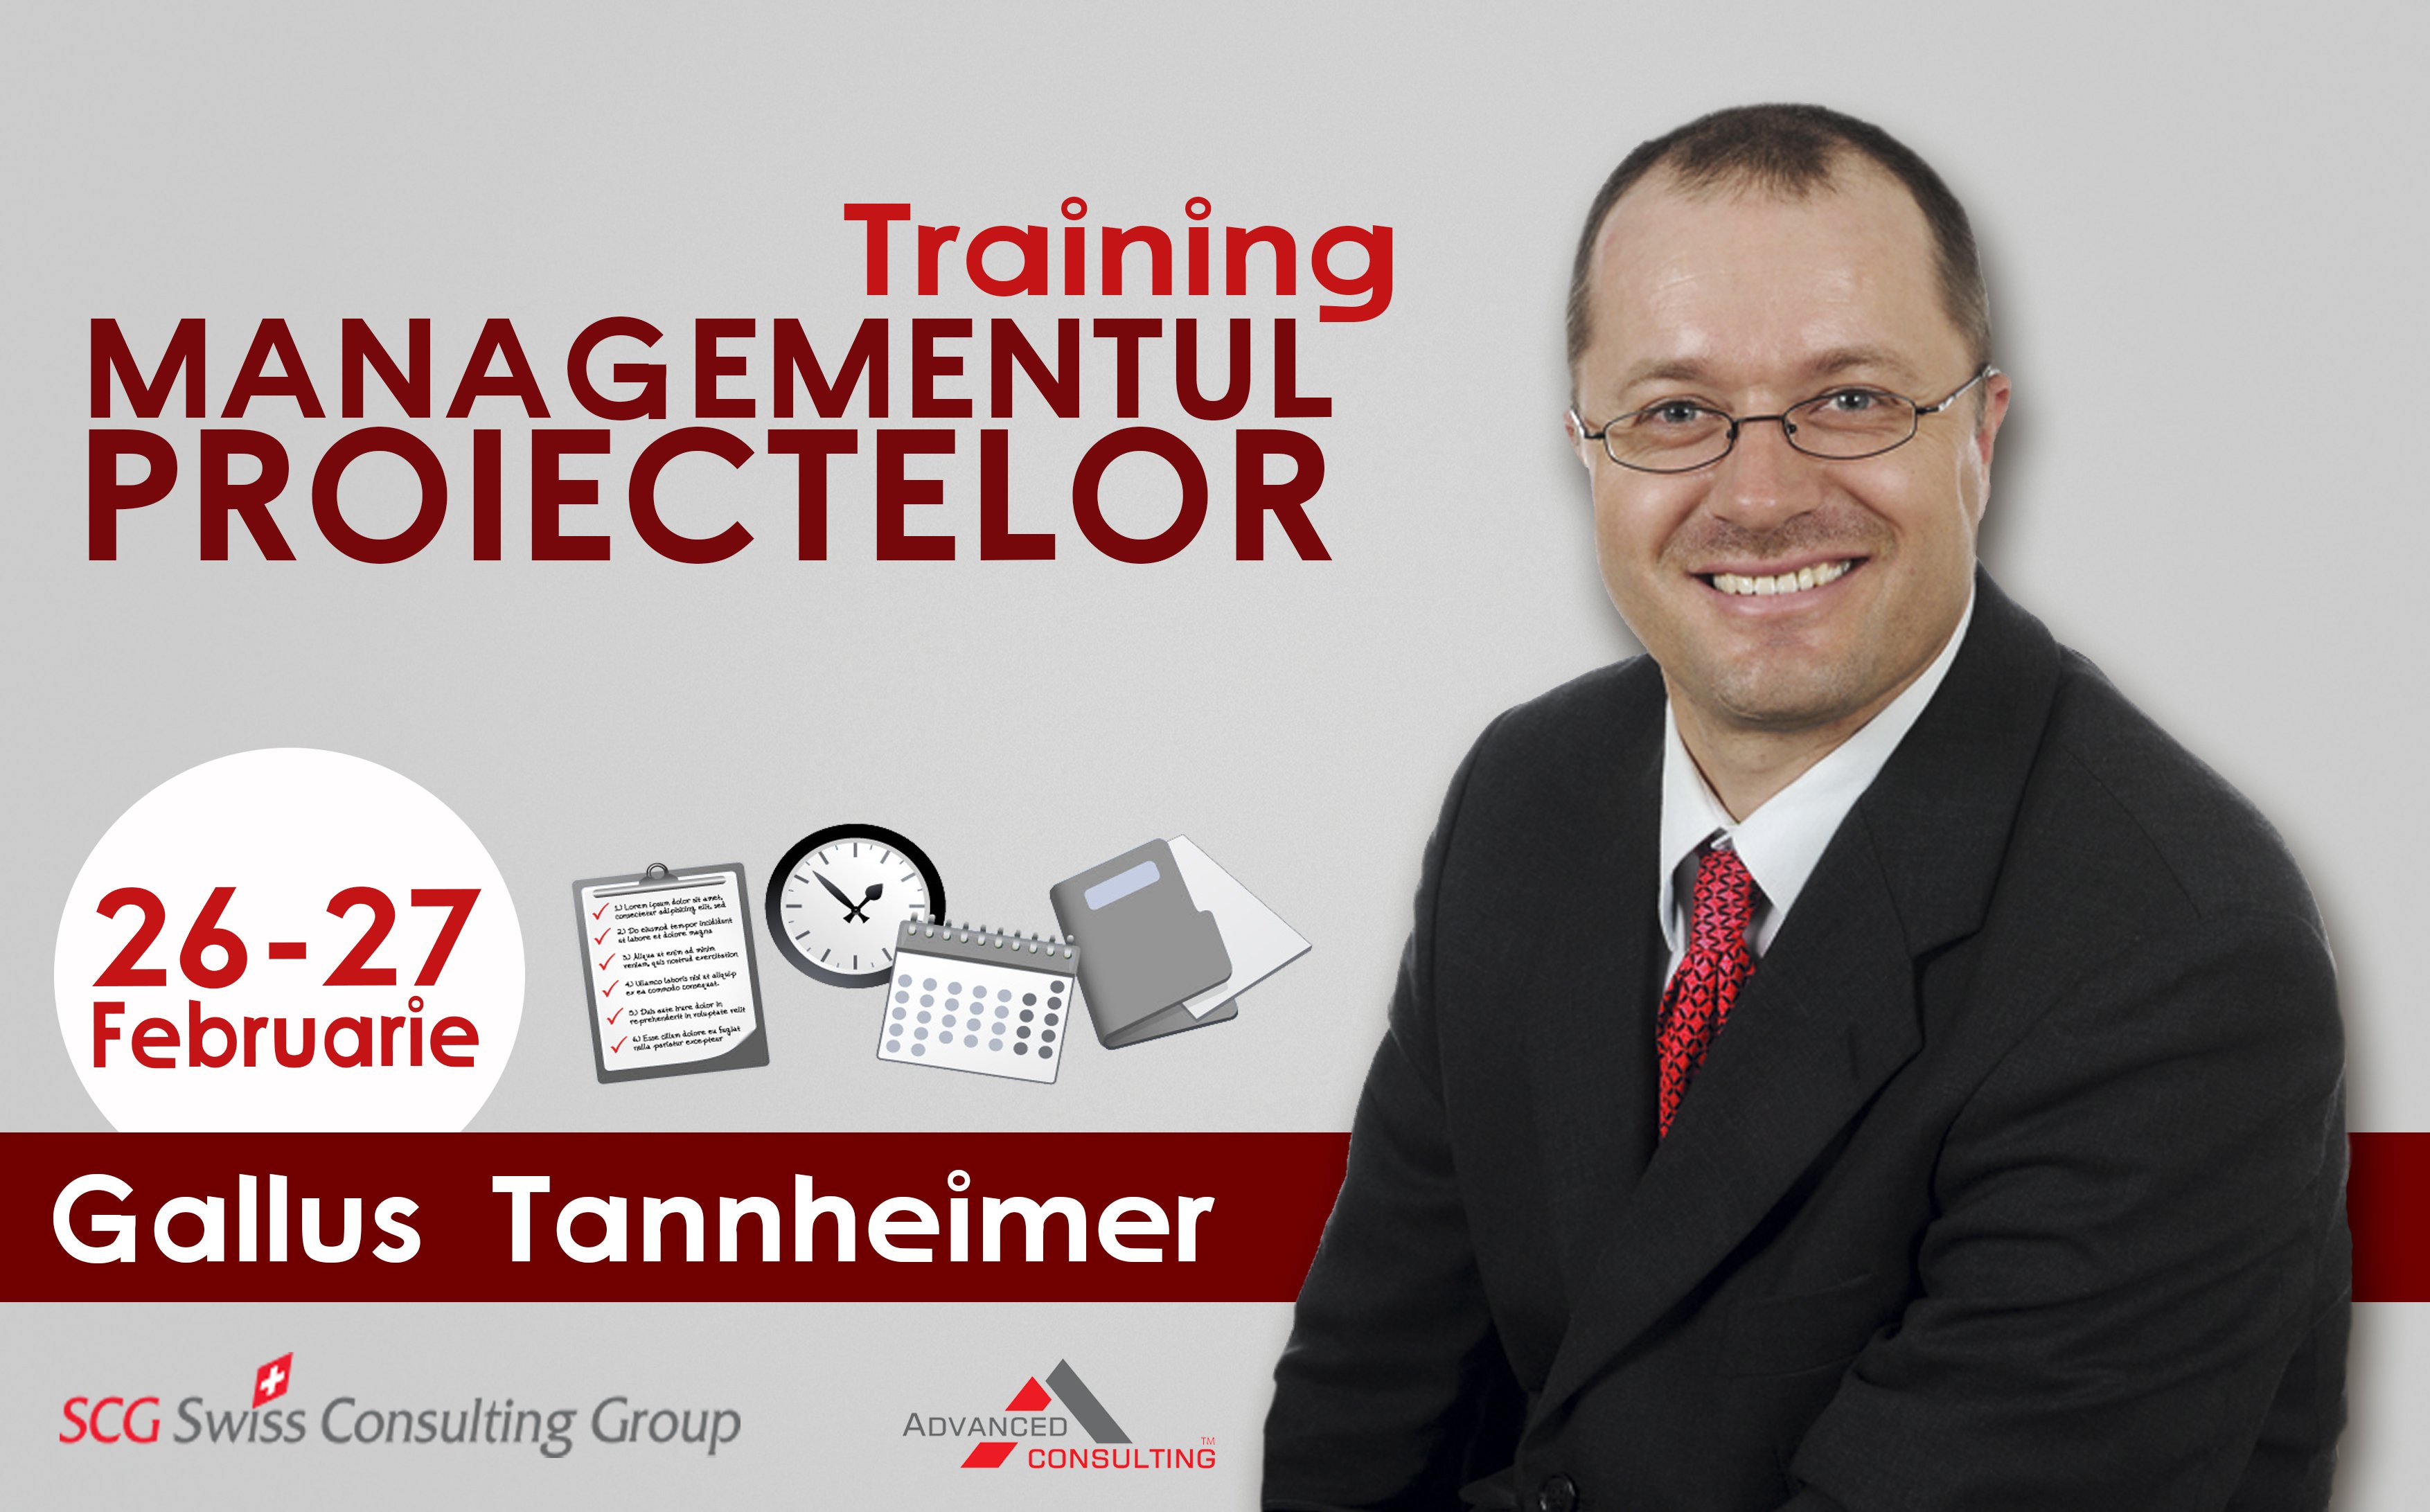 Gallus Tannheimer - Managementul proiectelor